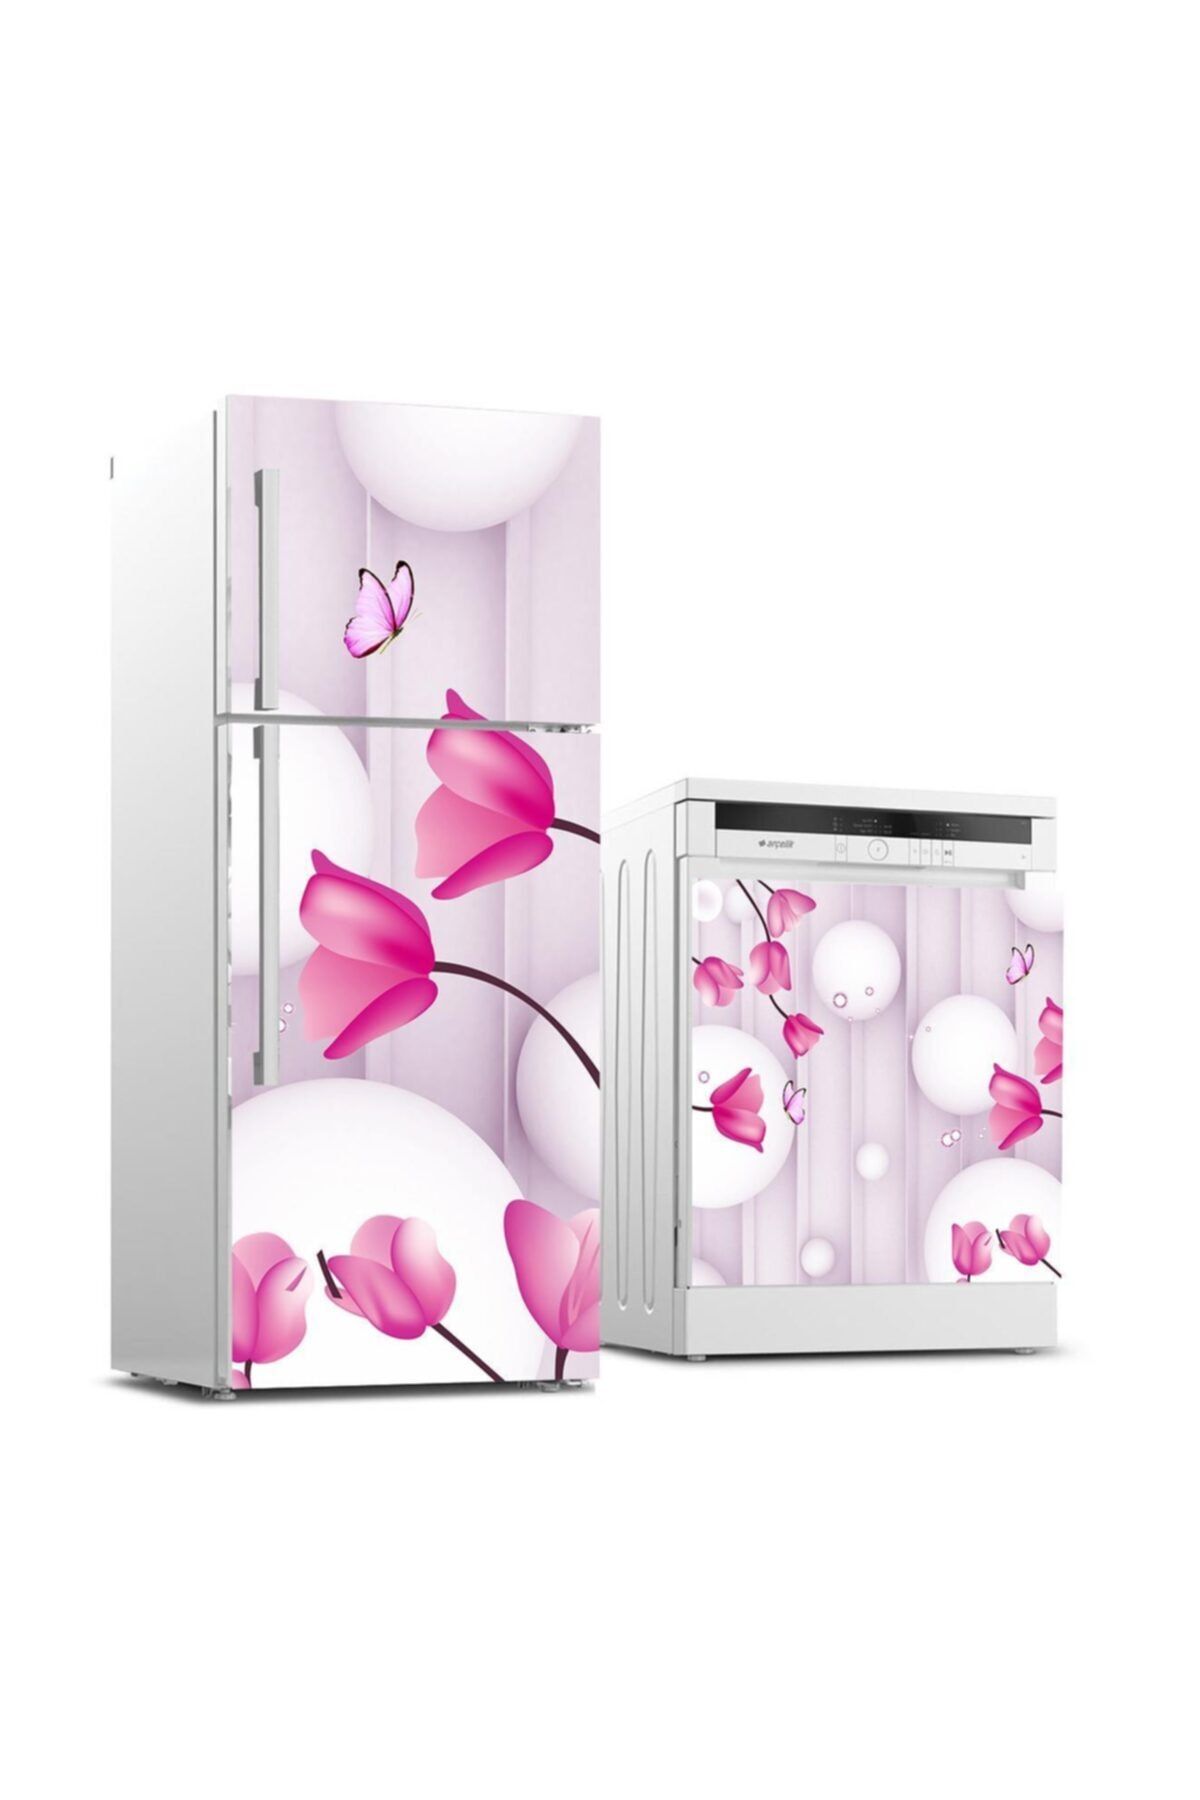 StickerArt Buzdolabı Ve Bulaşık Makinası Beyaz Eşya Sticker Kaplama 3d Çiçek Kelebek